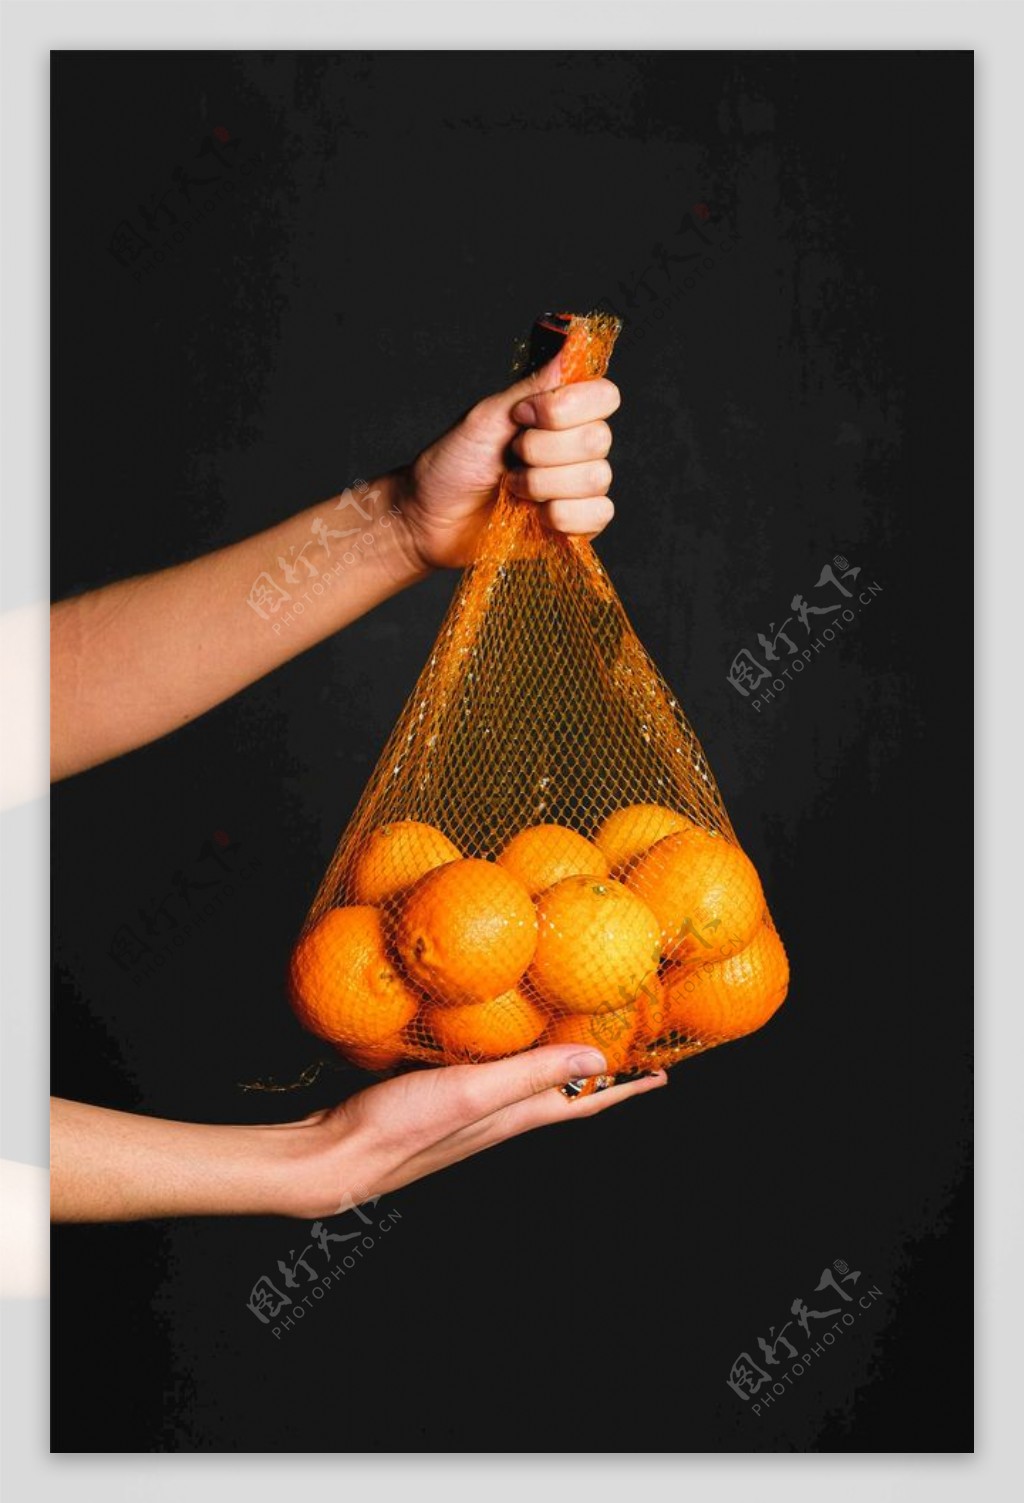 手提袋中的橙子